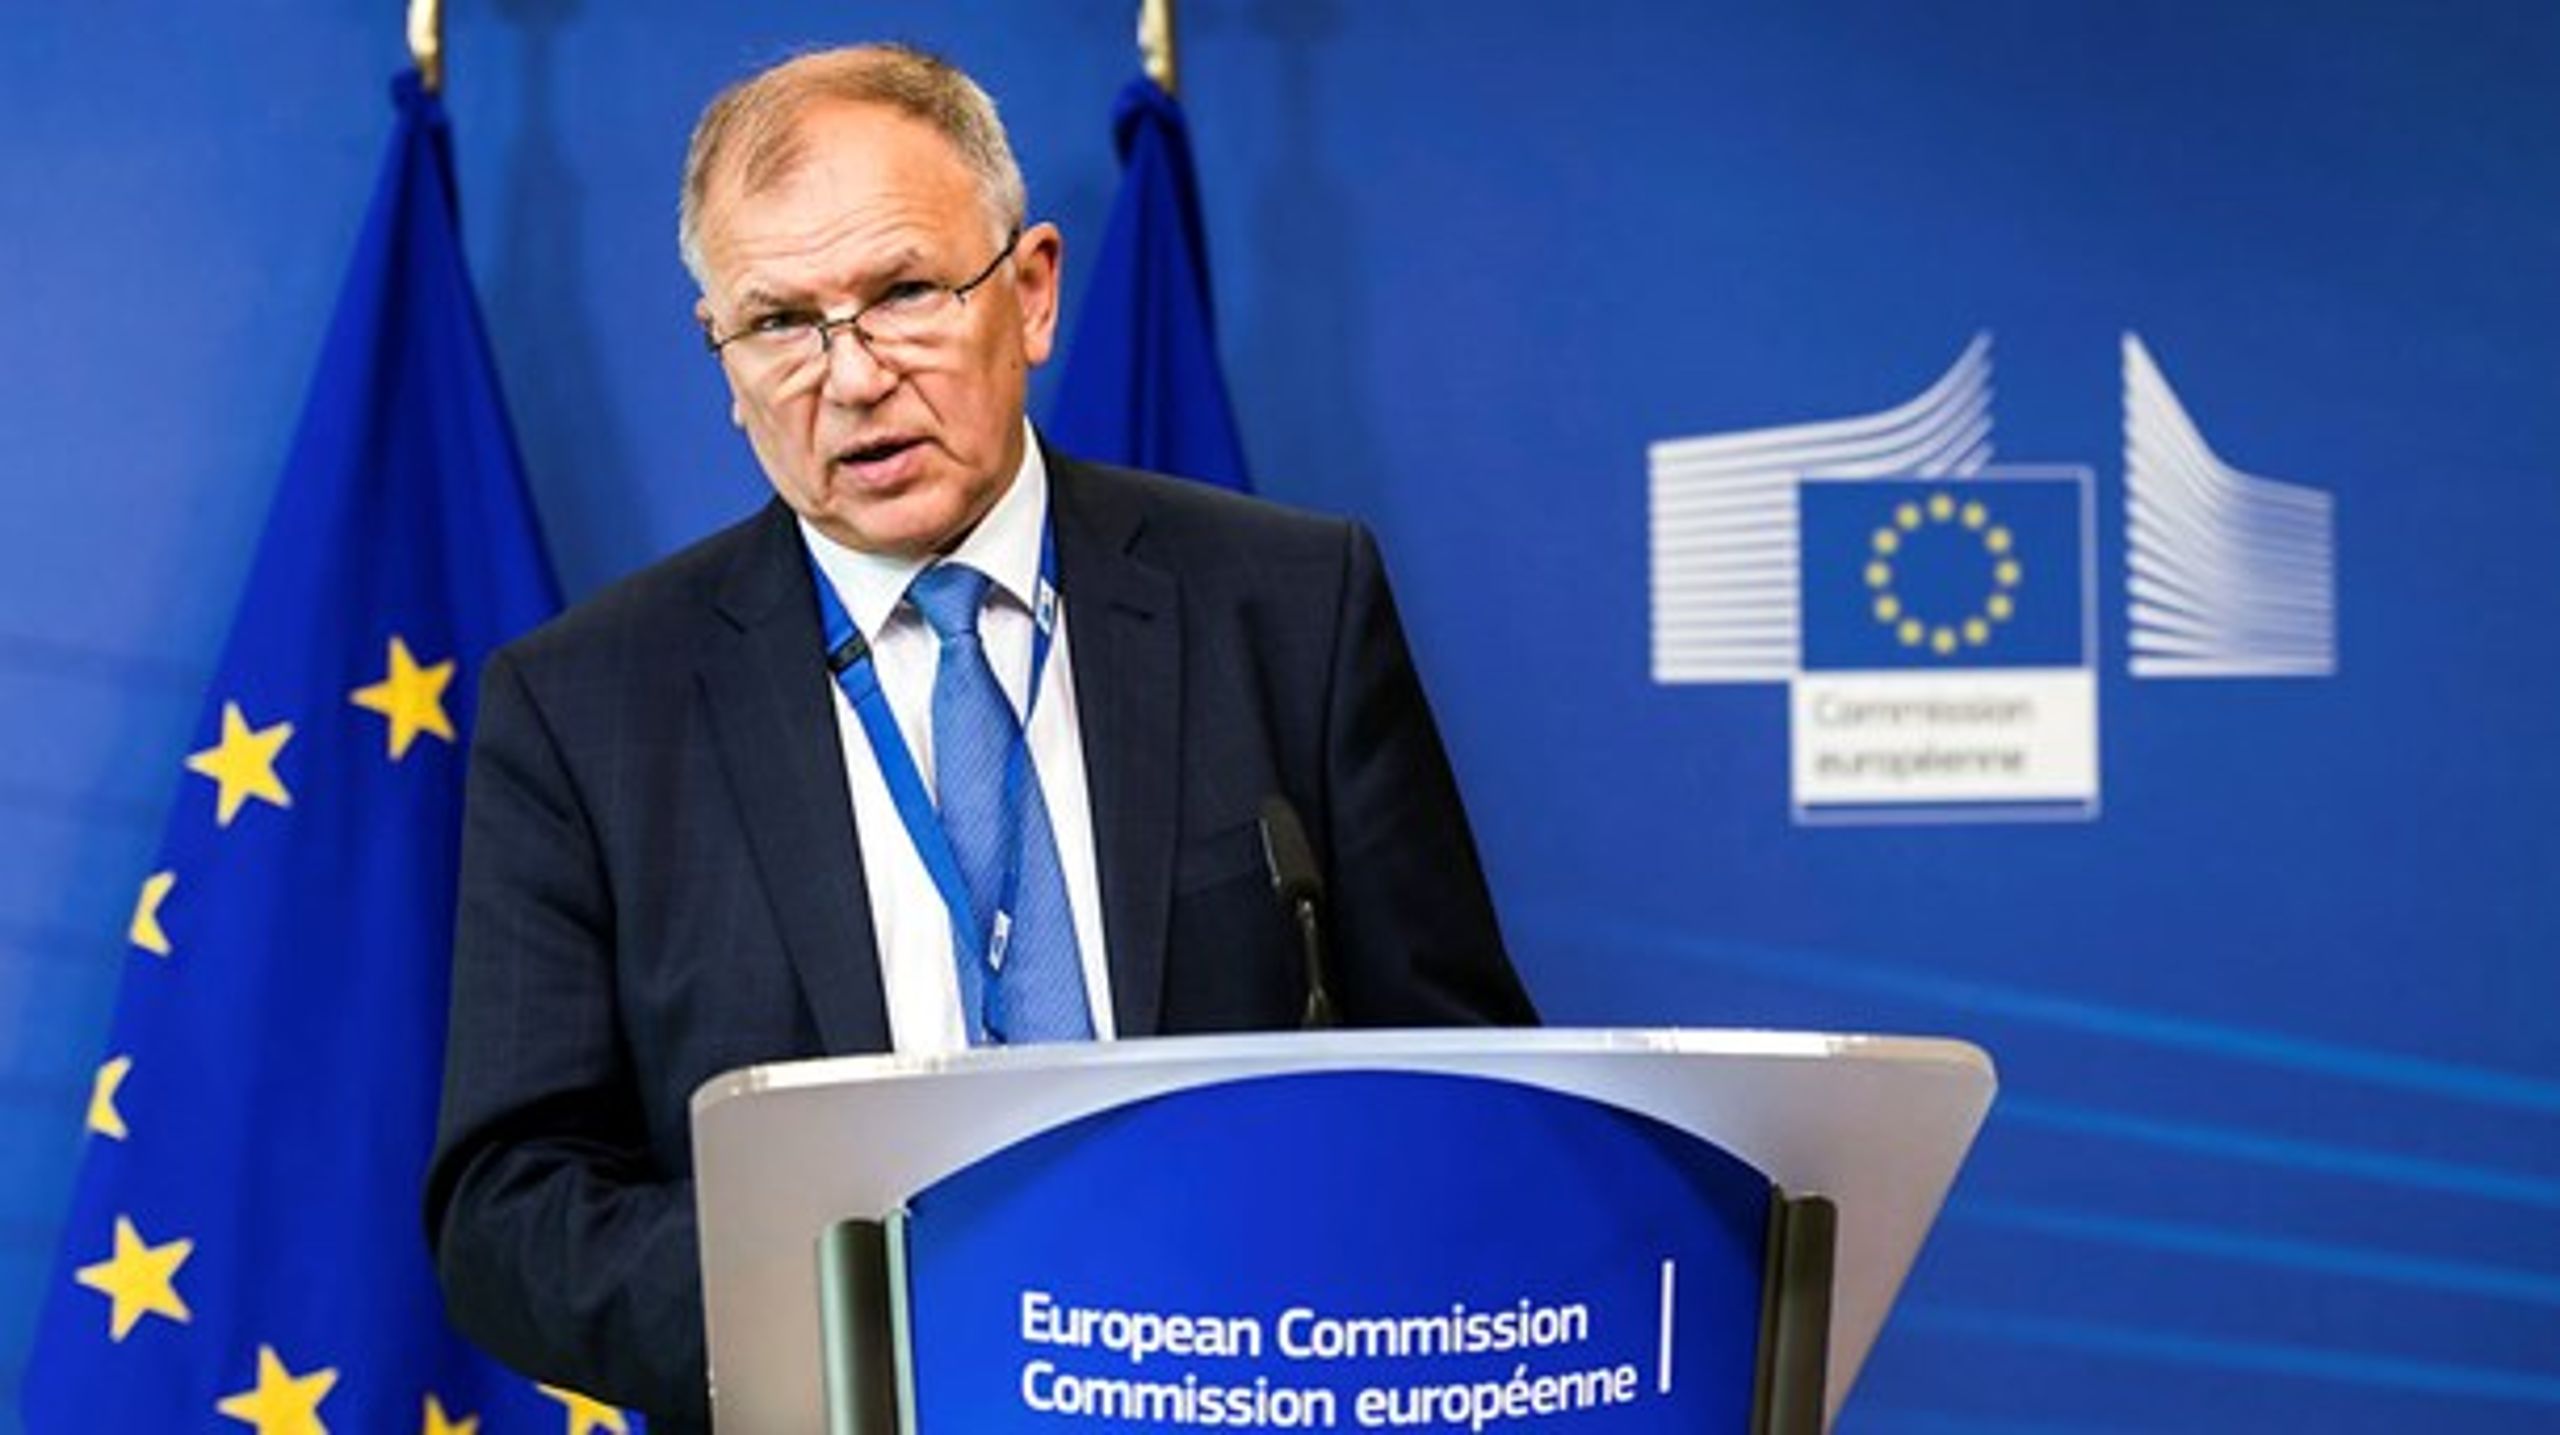 Vytenis Andriukaitis, EU-kommissær for sundhed
og fødevarer, præsenterede onsdag kommissionens forslag til en mere gennemsigtig godekendelsesproces af fødevarer.